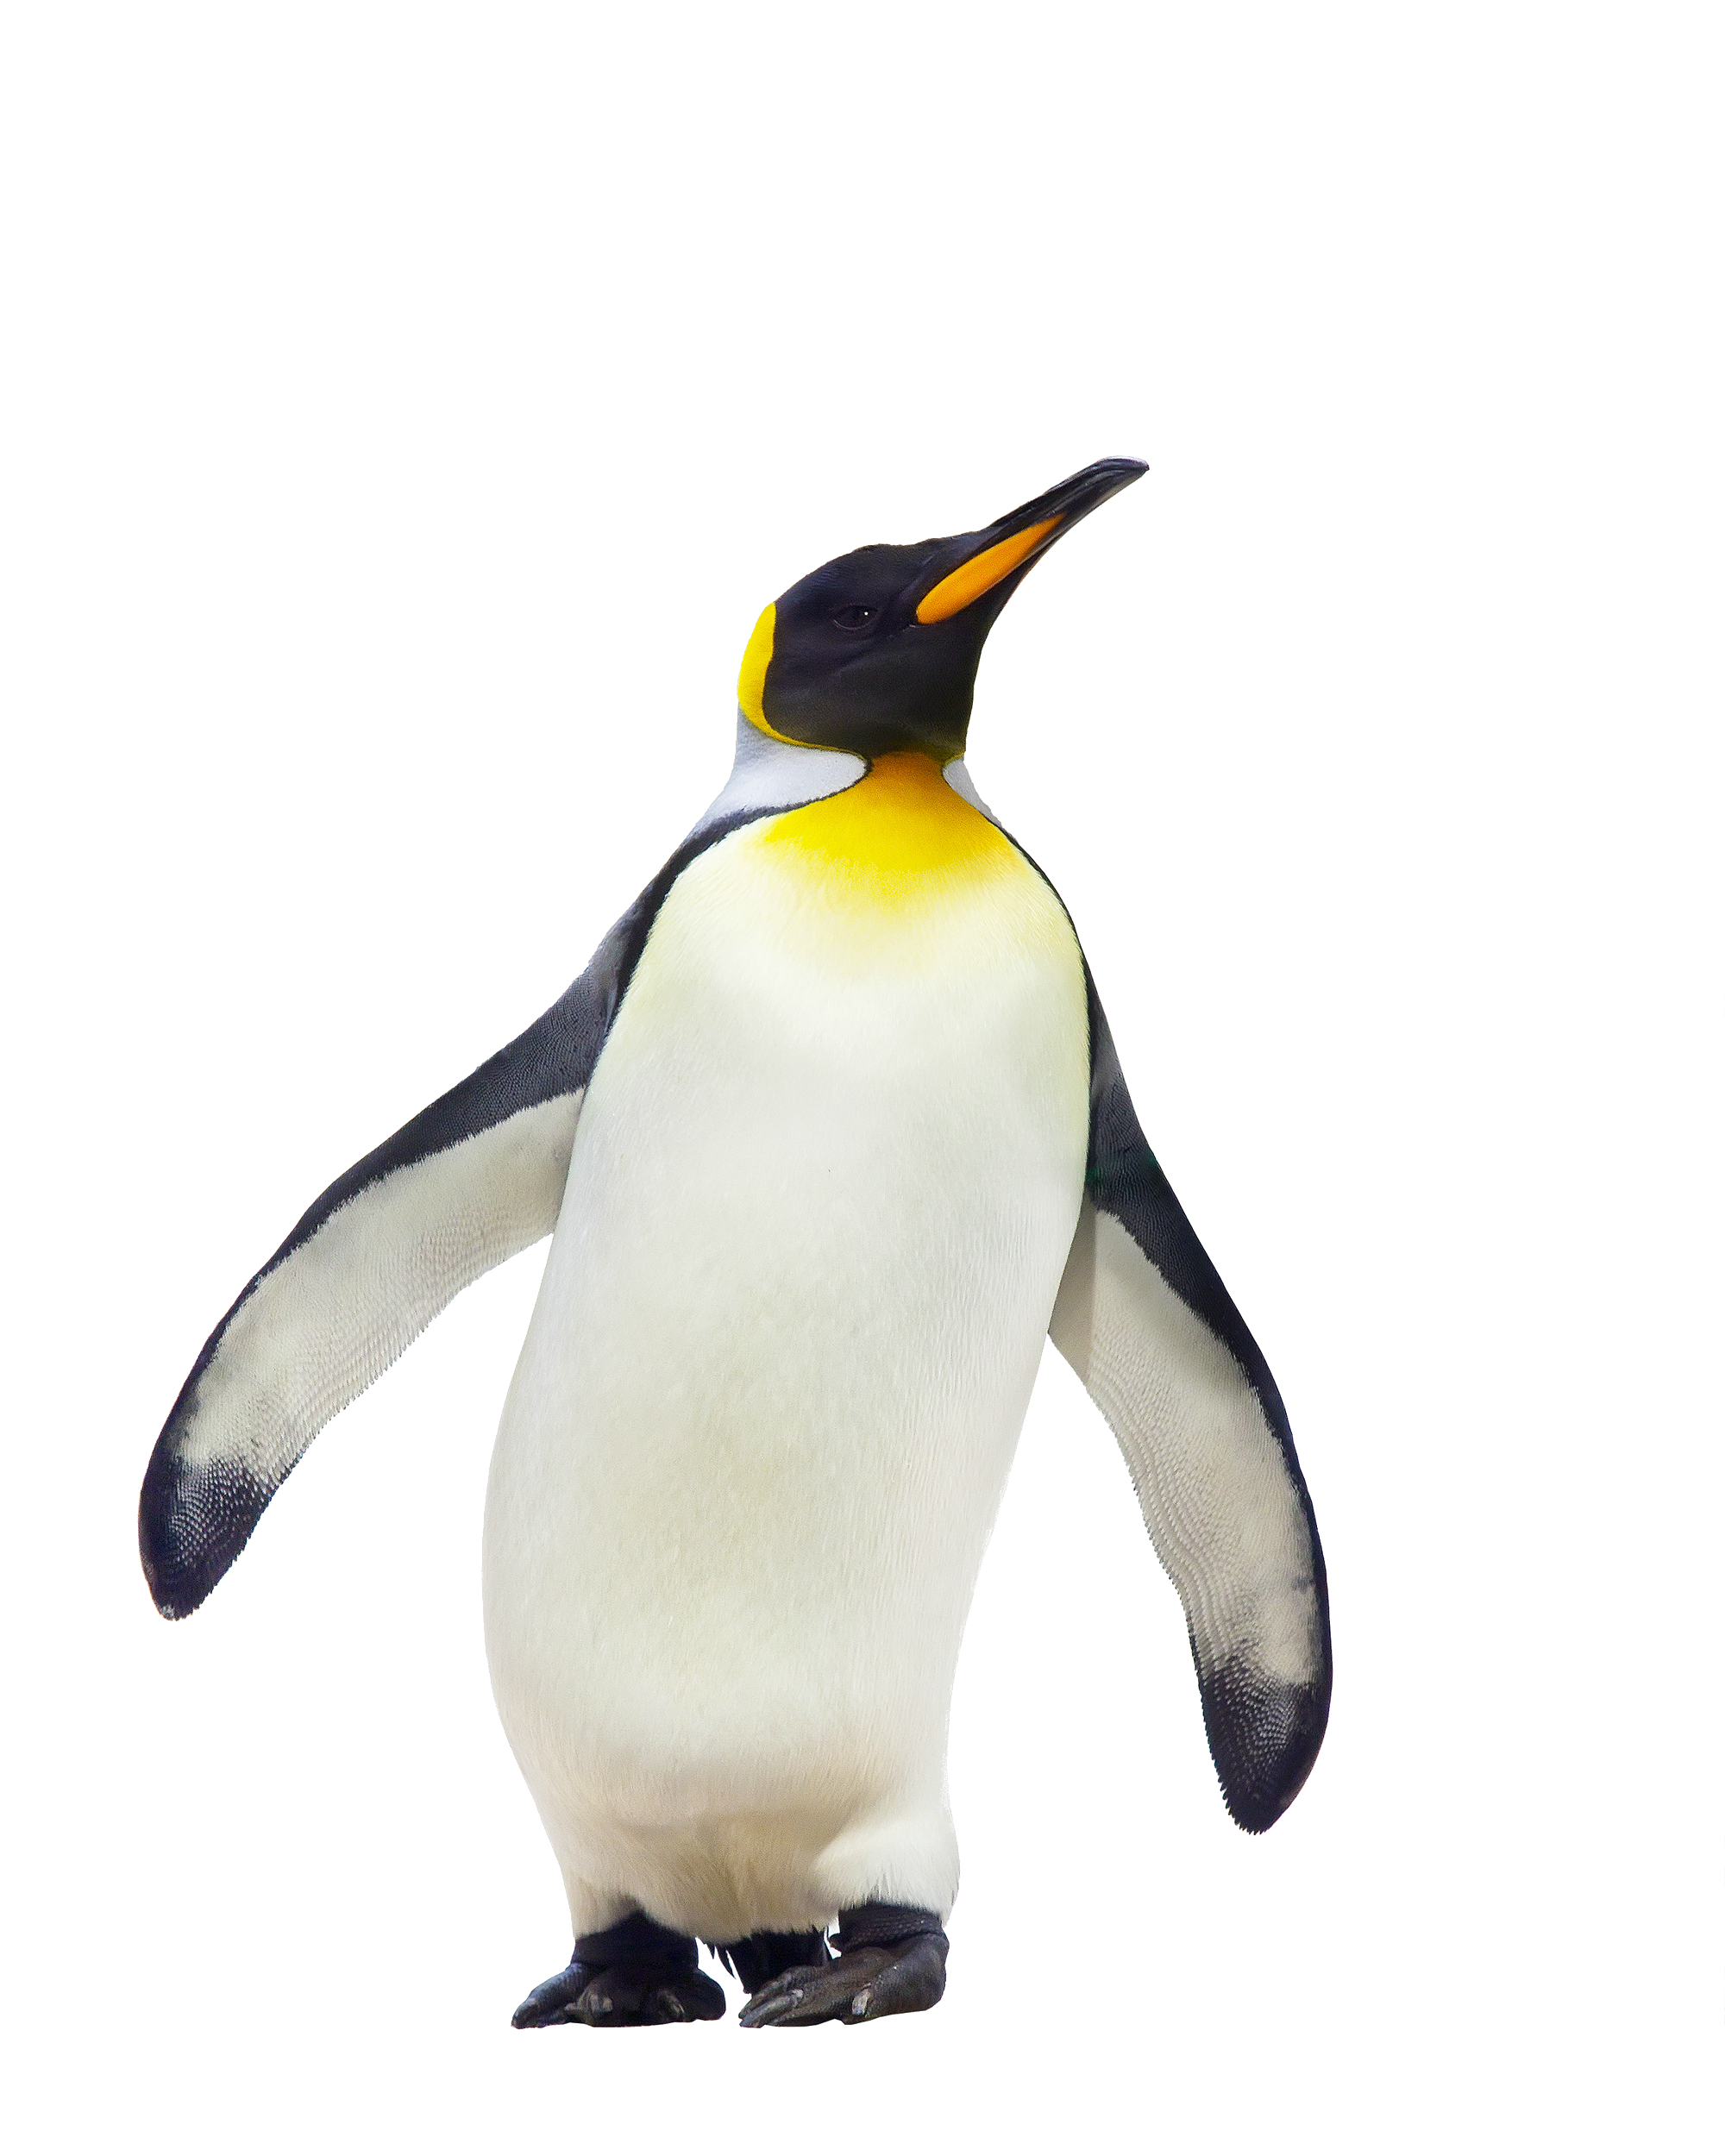 Penguin walking PNG Image - PurePNG | Free transparent CC0 PNG Image ...